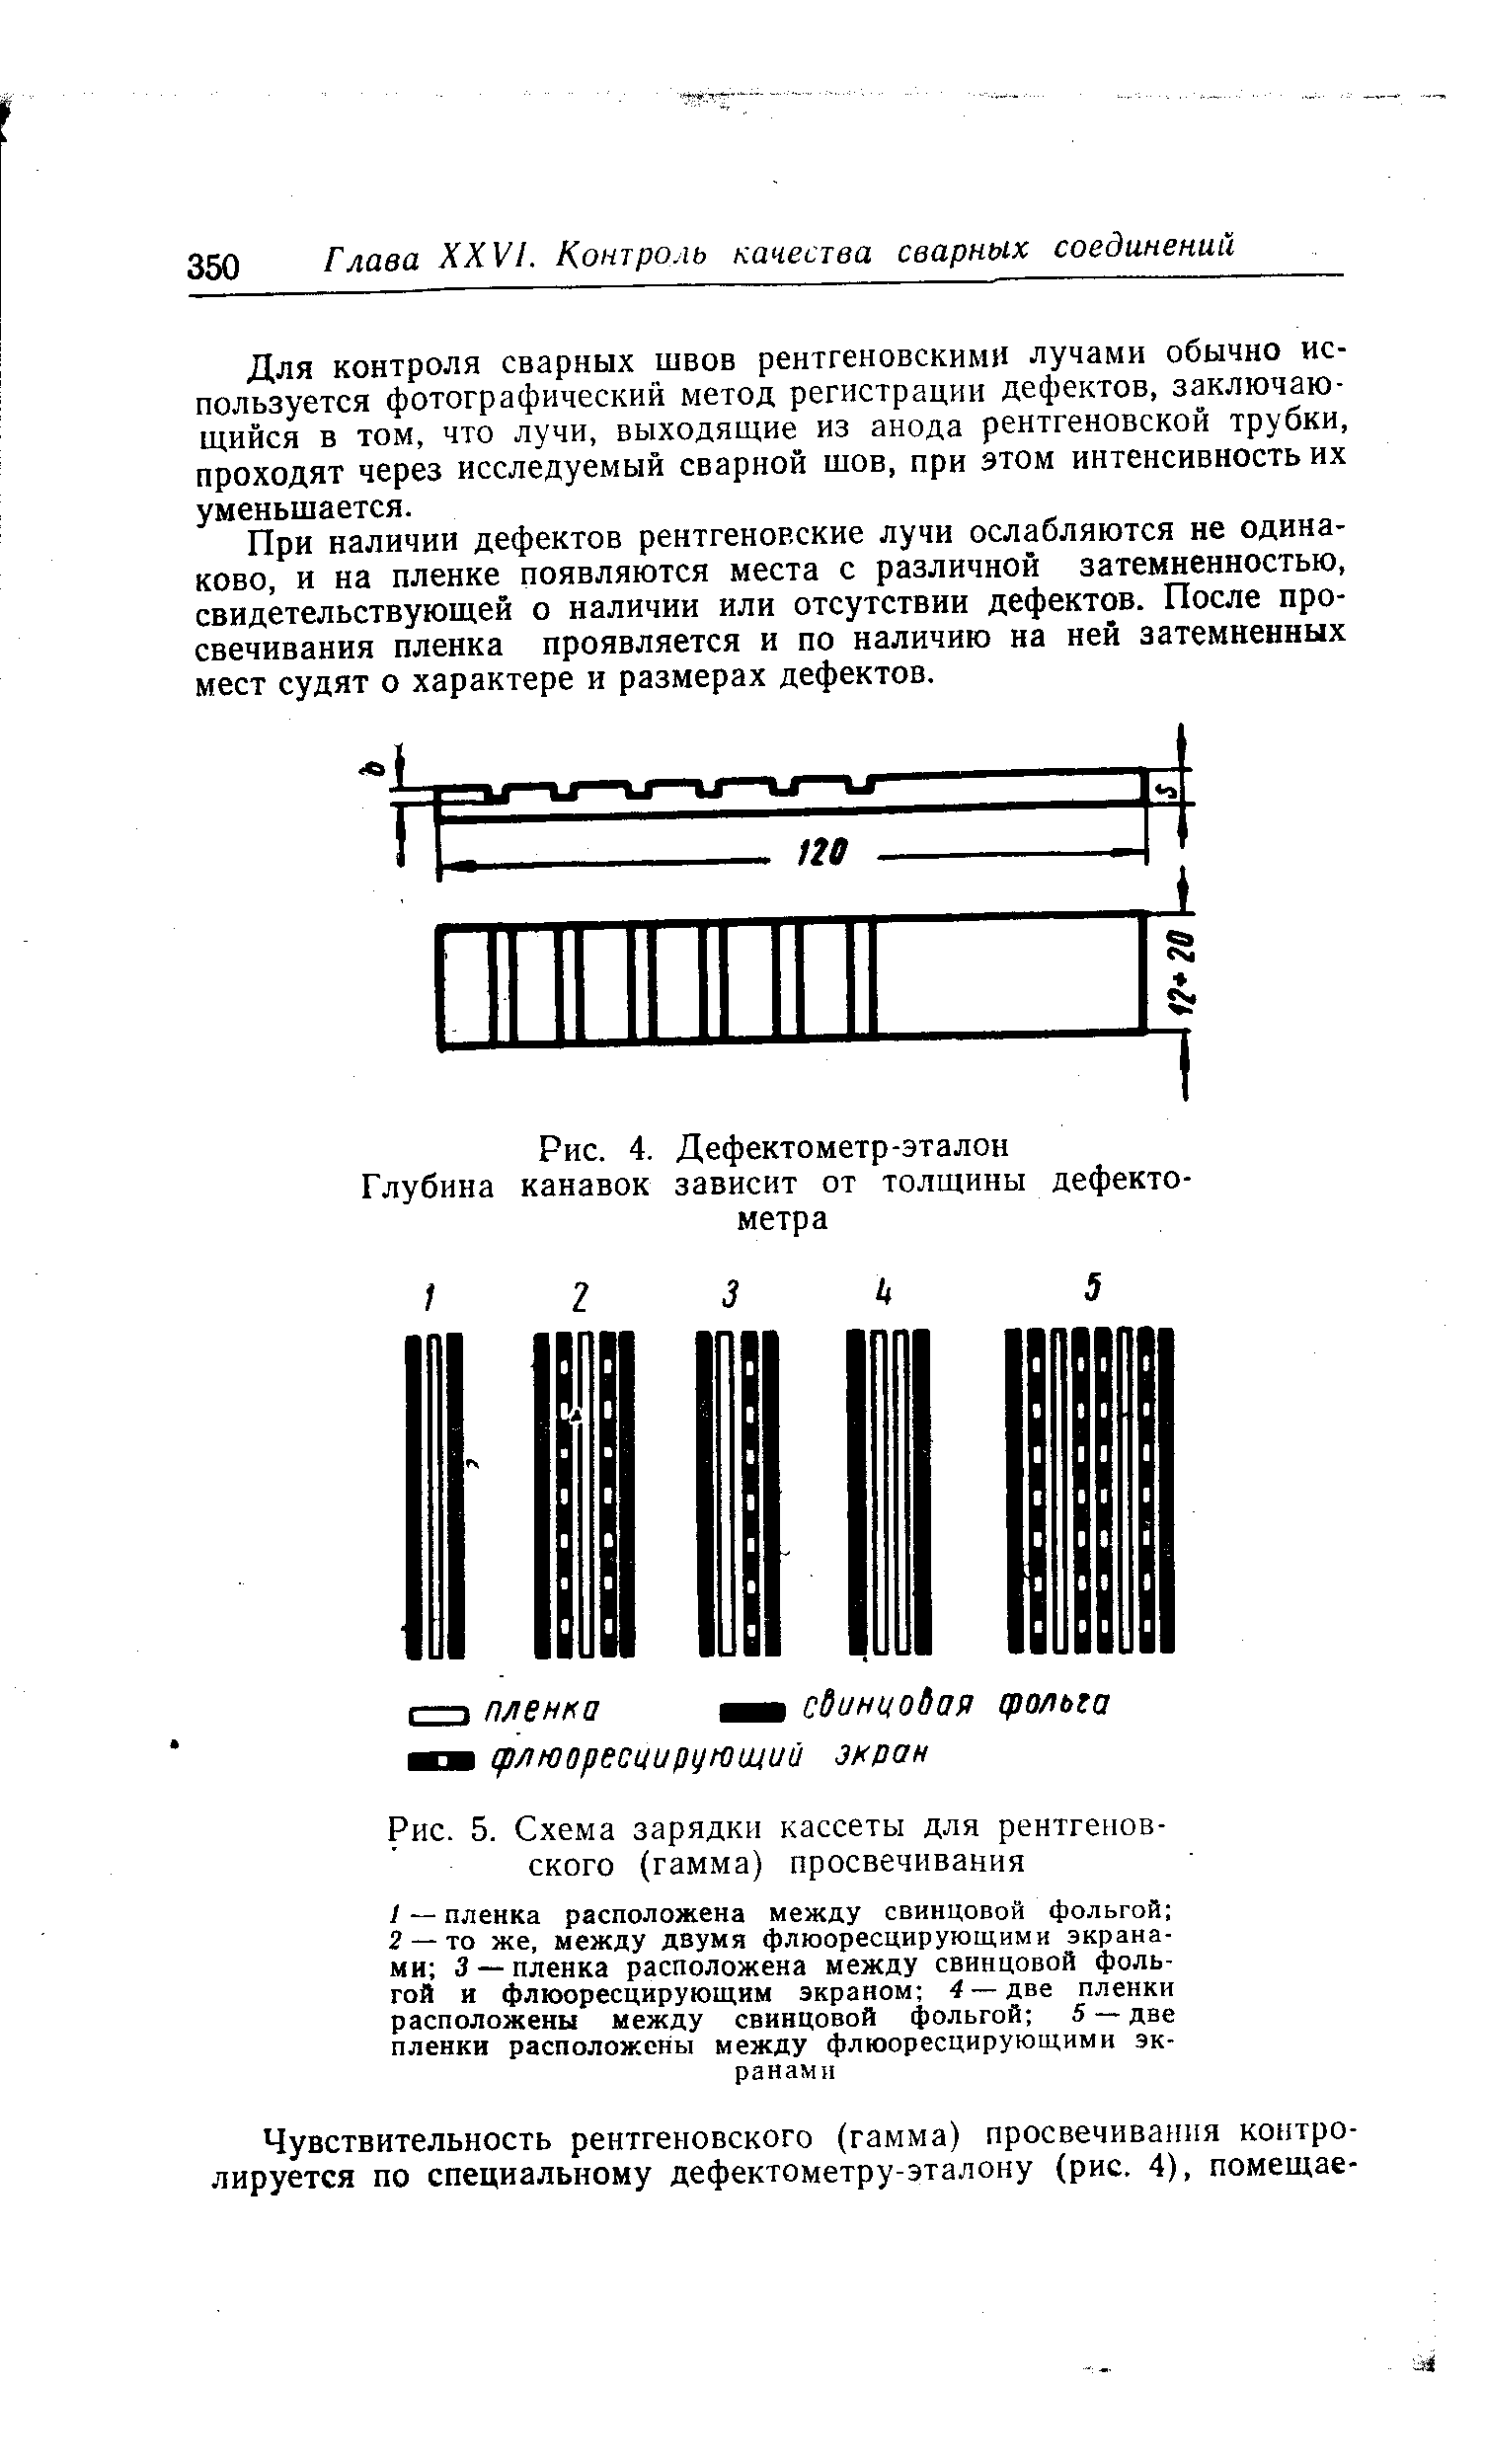 Рис. 5. Схема зарядки кассеты для рентгеновского (гамма) просвечивания
